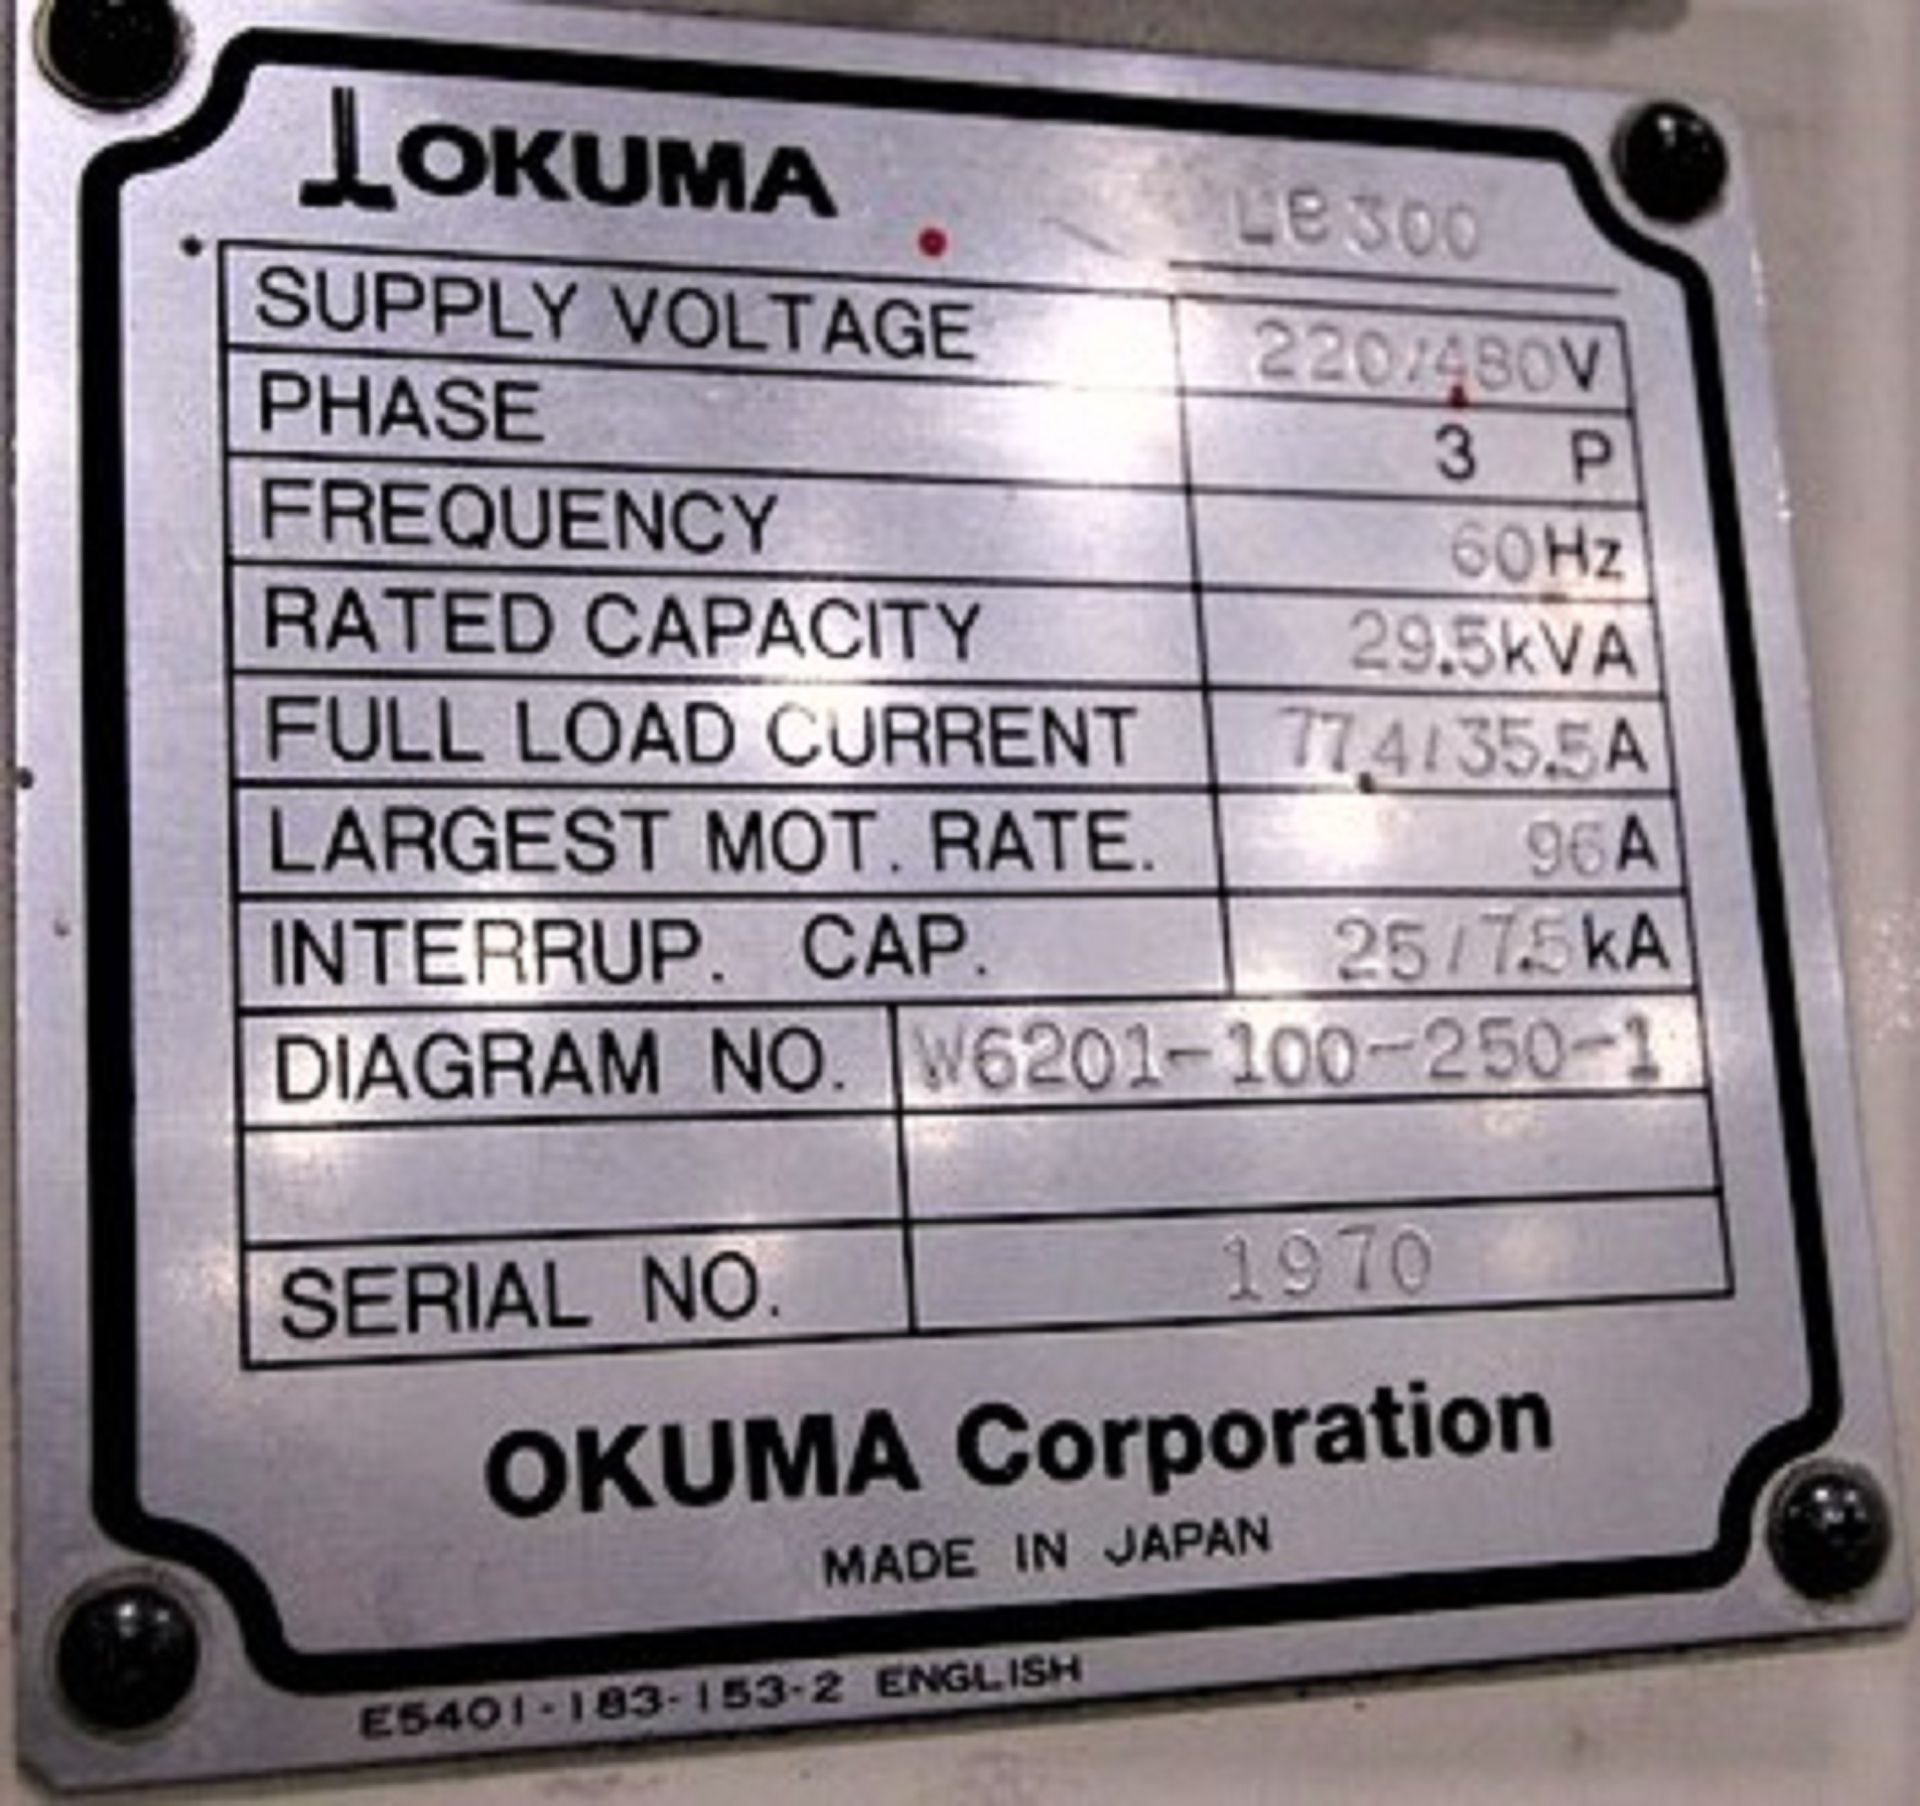 13.5"X40" OKUMA LB300MY CNC TURNING CENTER LATHE, S/N 1970 - Image 8 of 9